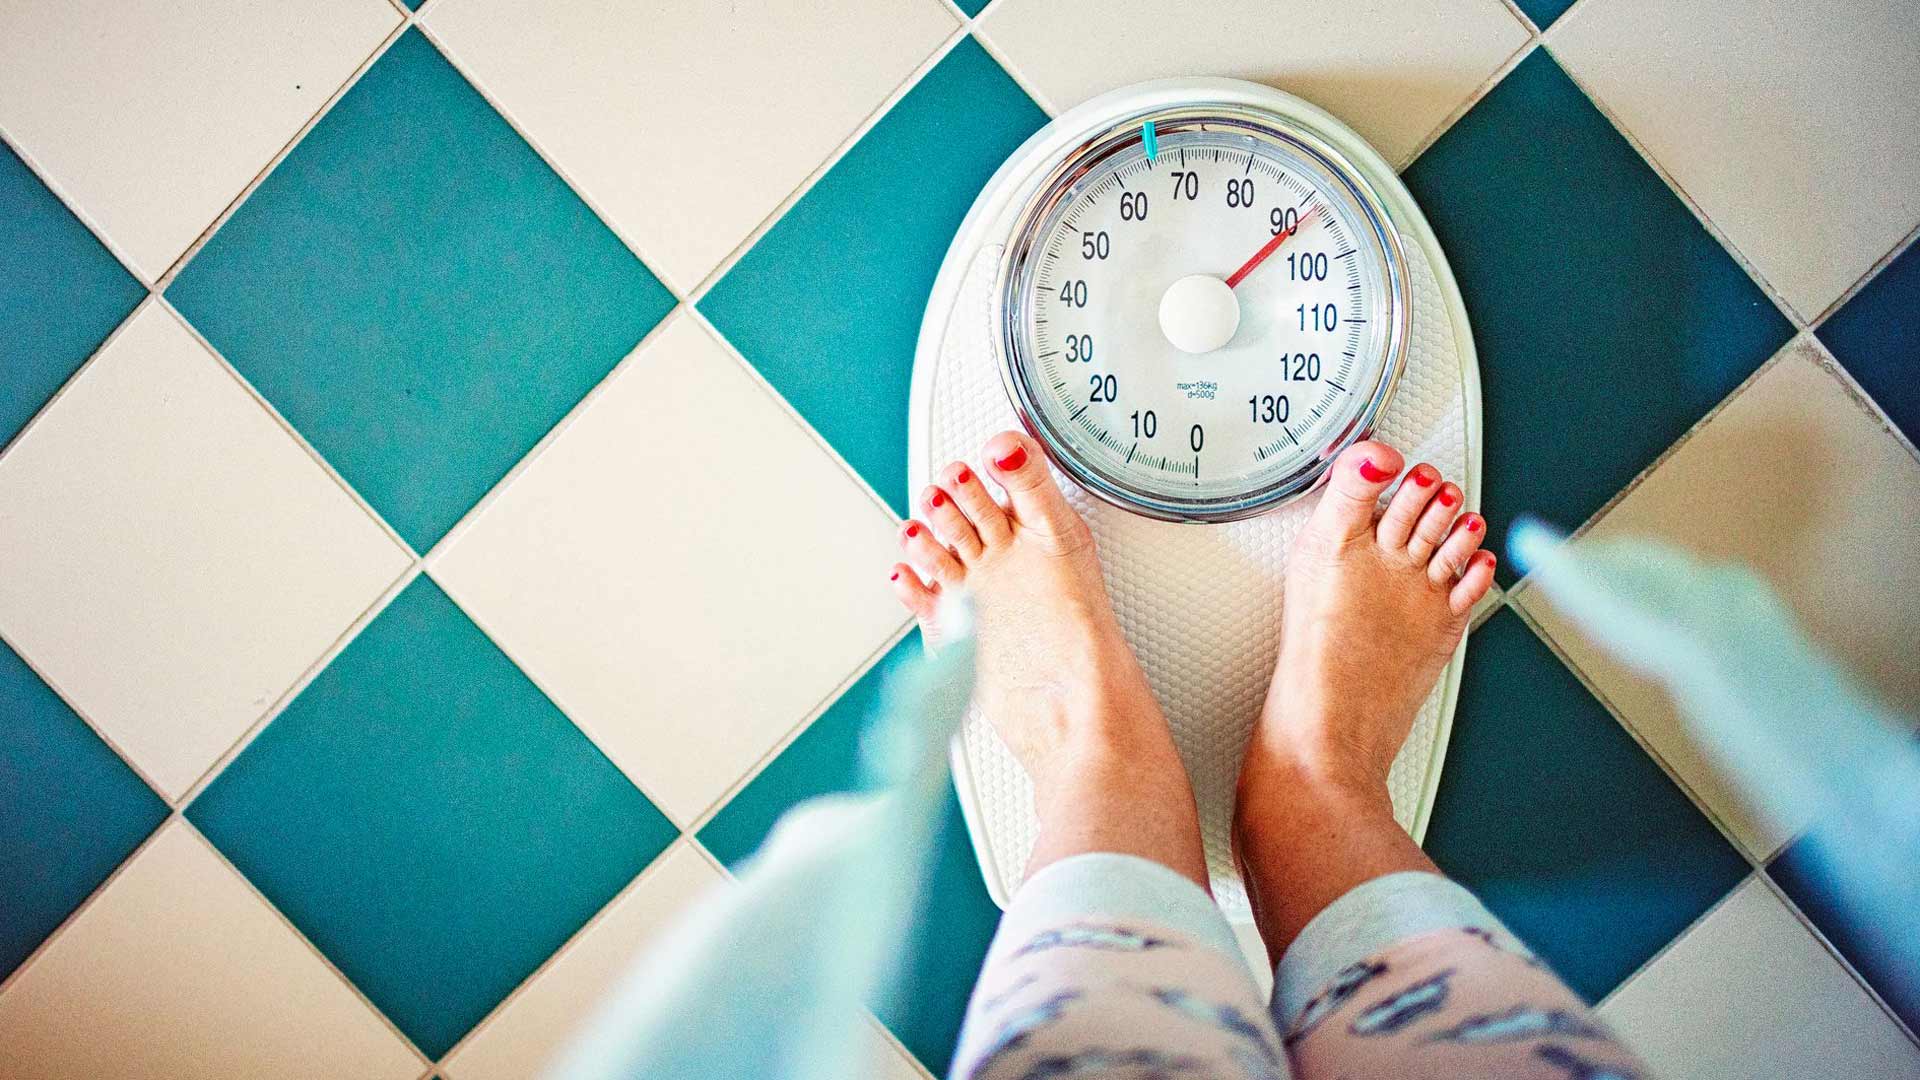 Jos ylimääräinen rasvakudos on kertynyt lantioon ja reisiin, painoindeksi voi olla selvästi yli 25 ilman, että siitä on haittaa terveydelle.